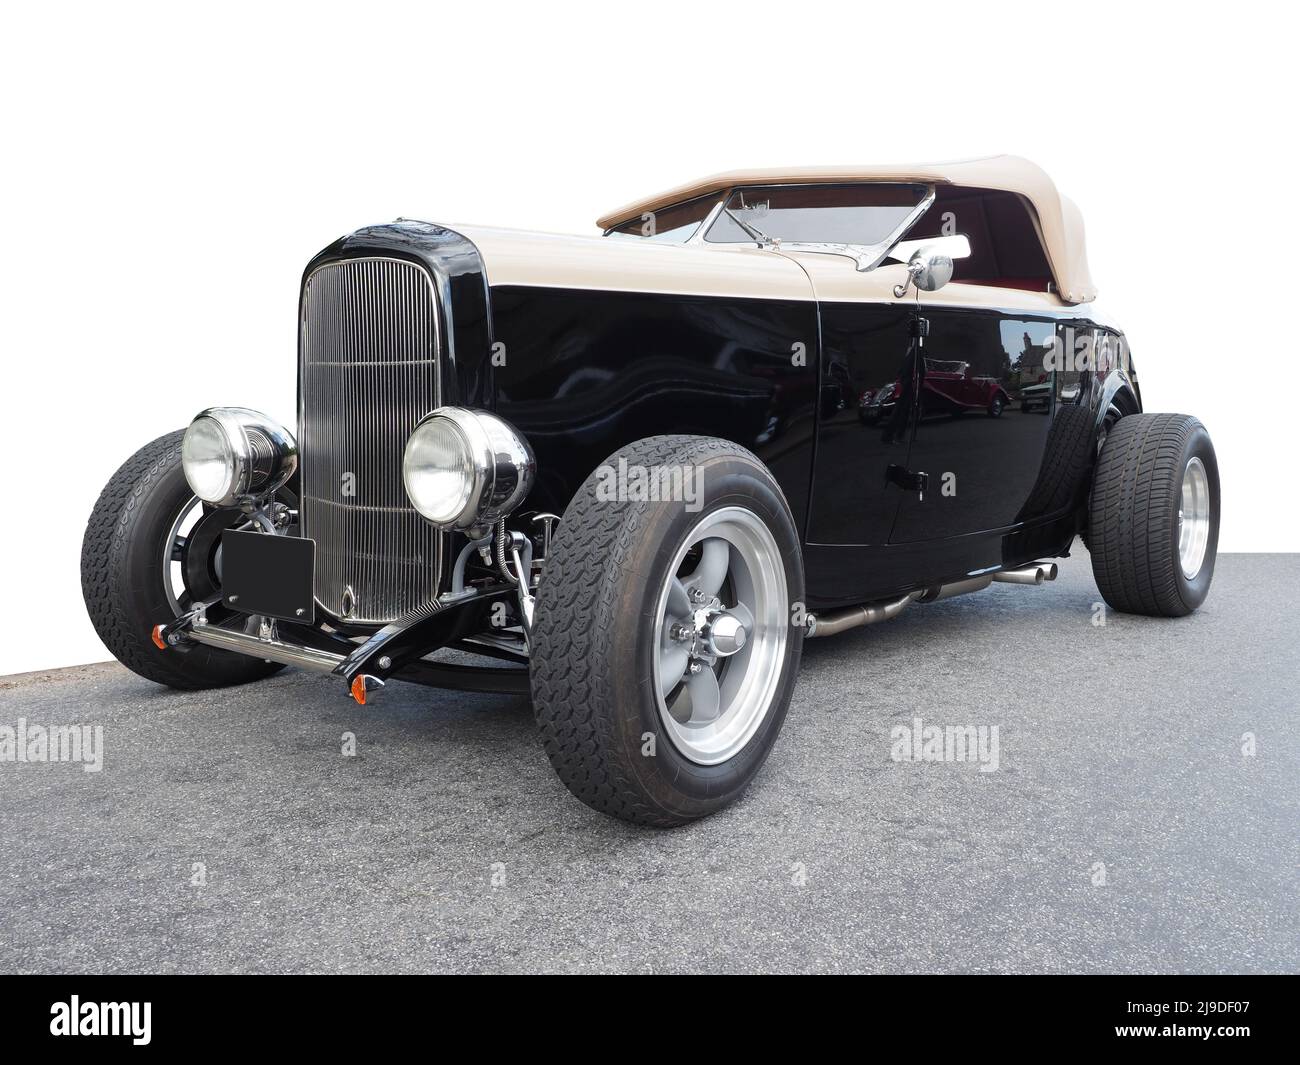 Une voiture cabriolet Hi-Boy Hot Rod, Ford modèle B 1932, 3 glaces, coupé Deuce, roadster. Isolé sur blanc avec la route, pas de logos. Banque D'Images